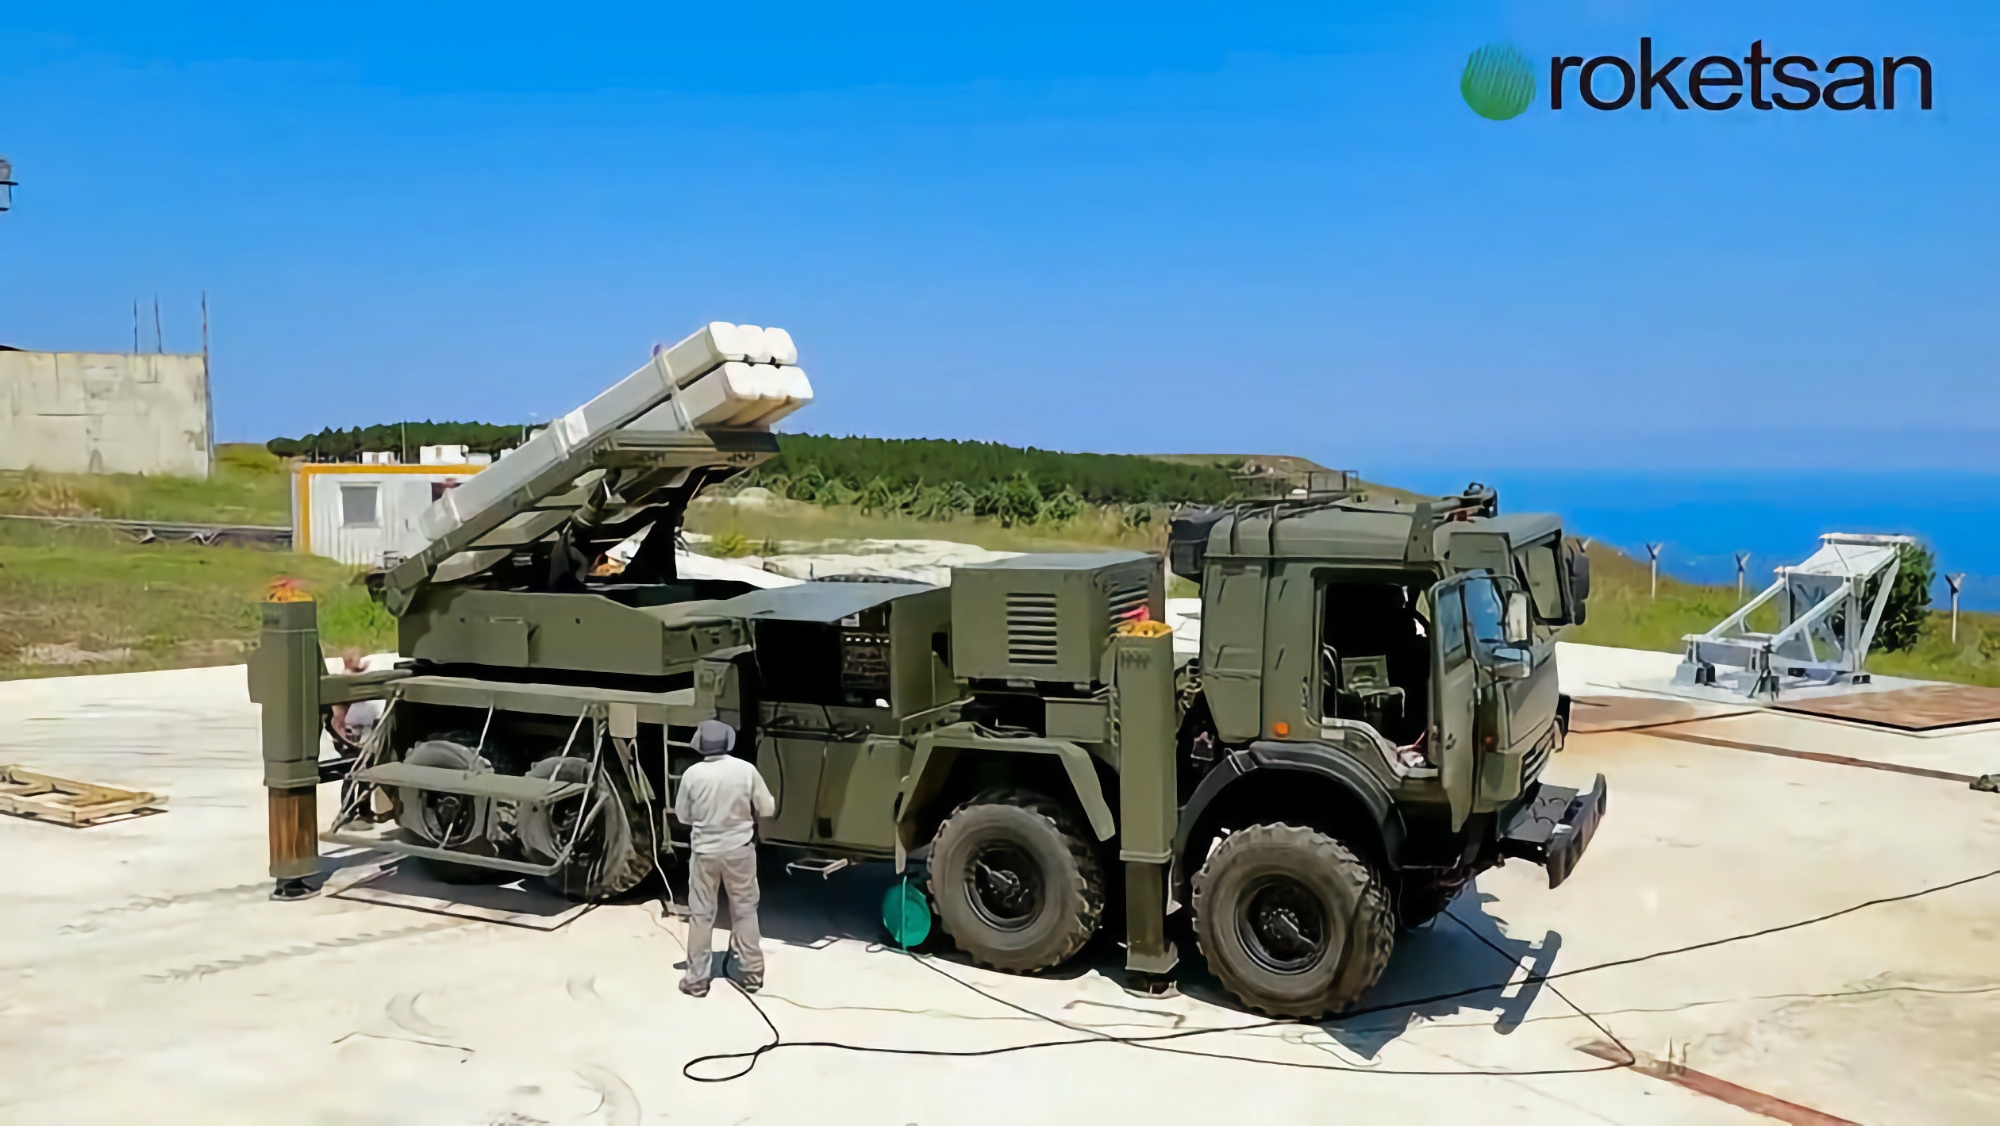 ВСУ показали как используют турецкую РСЗО с высокоточными ракетами TRLG-230, они могут наводиться с помощью БПЛА Bayraktar TB2